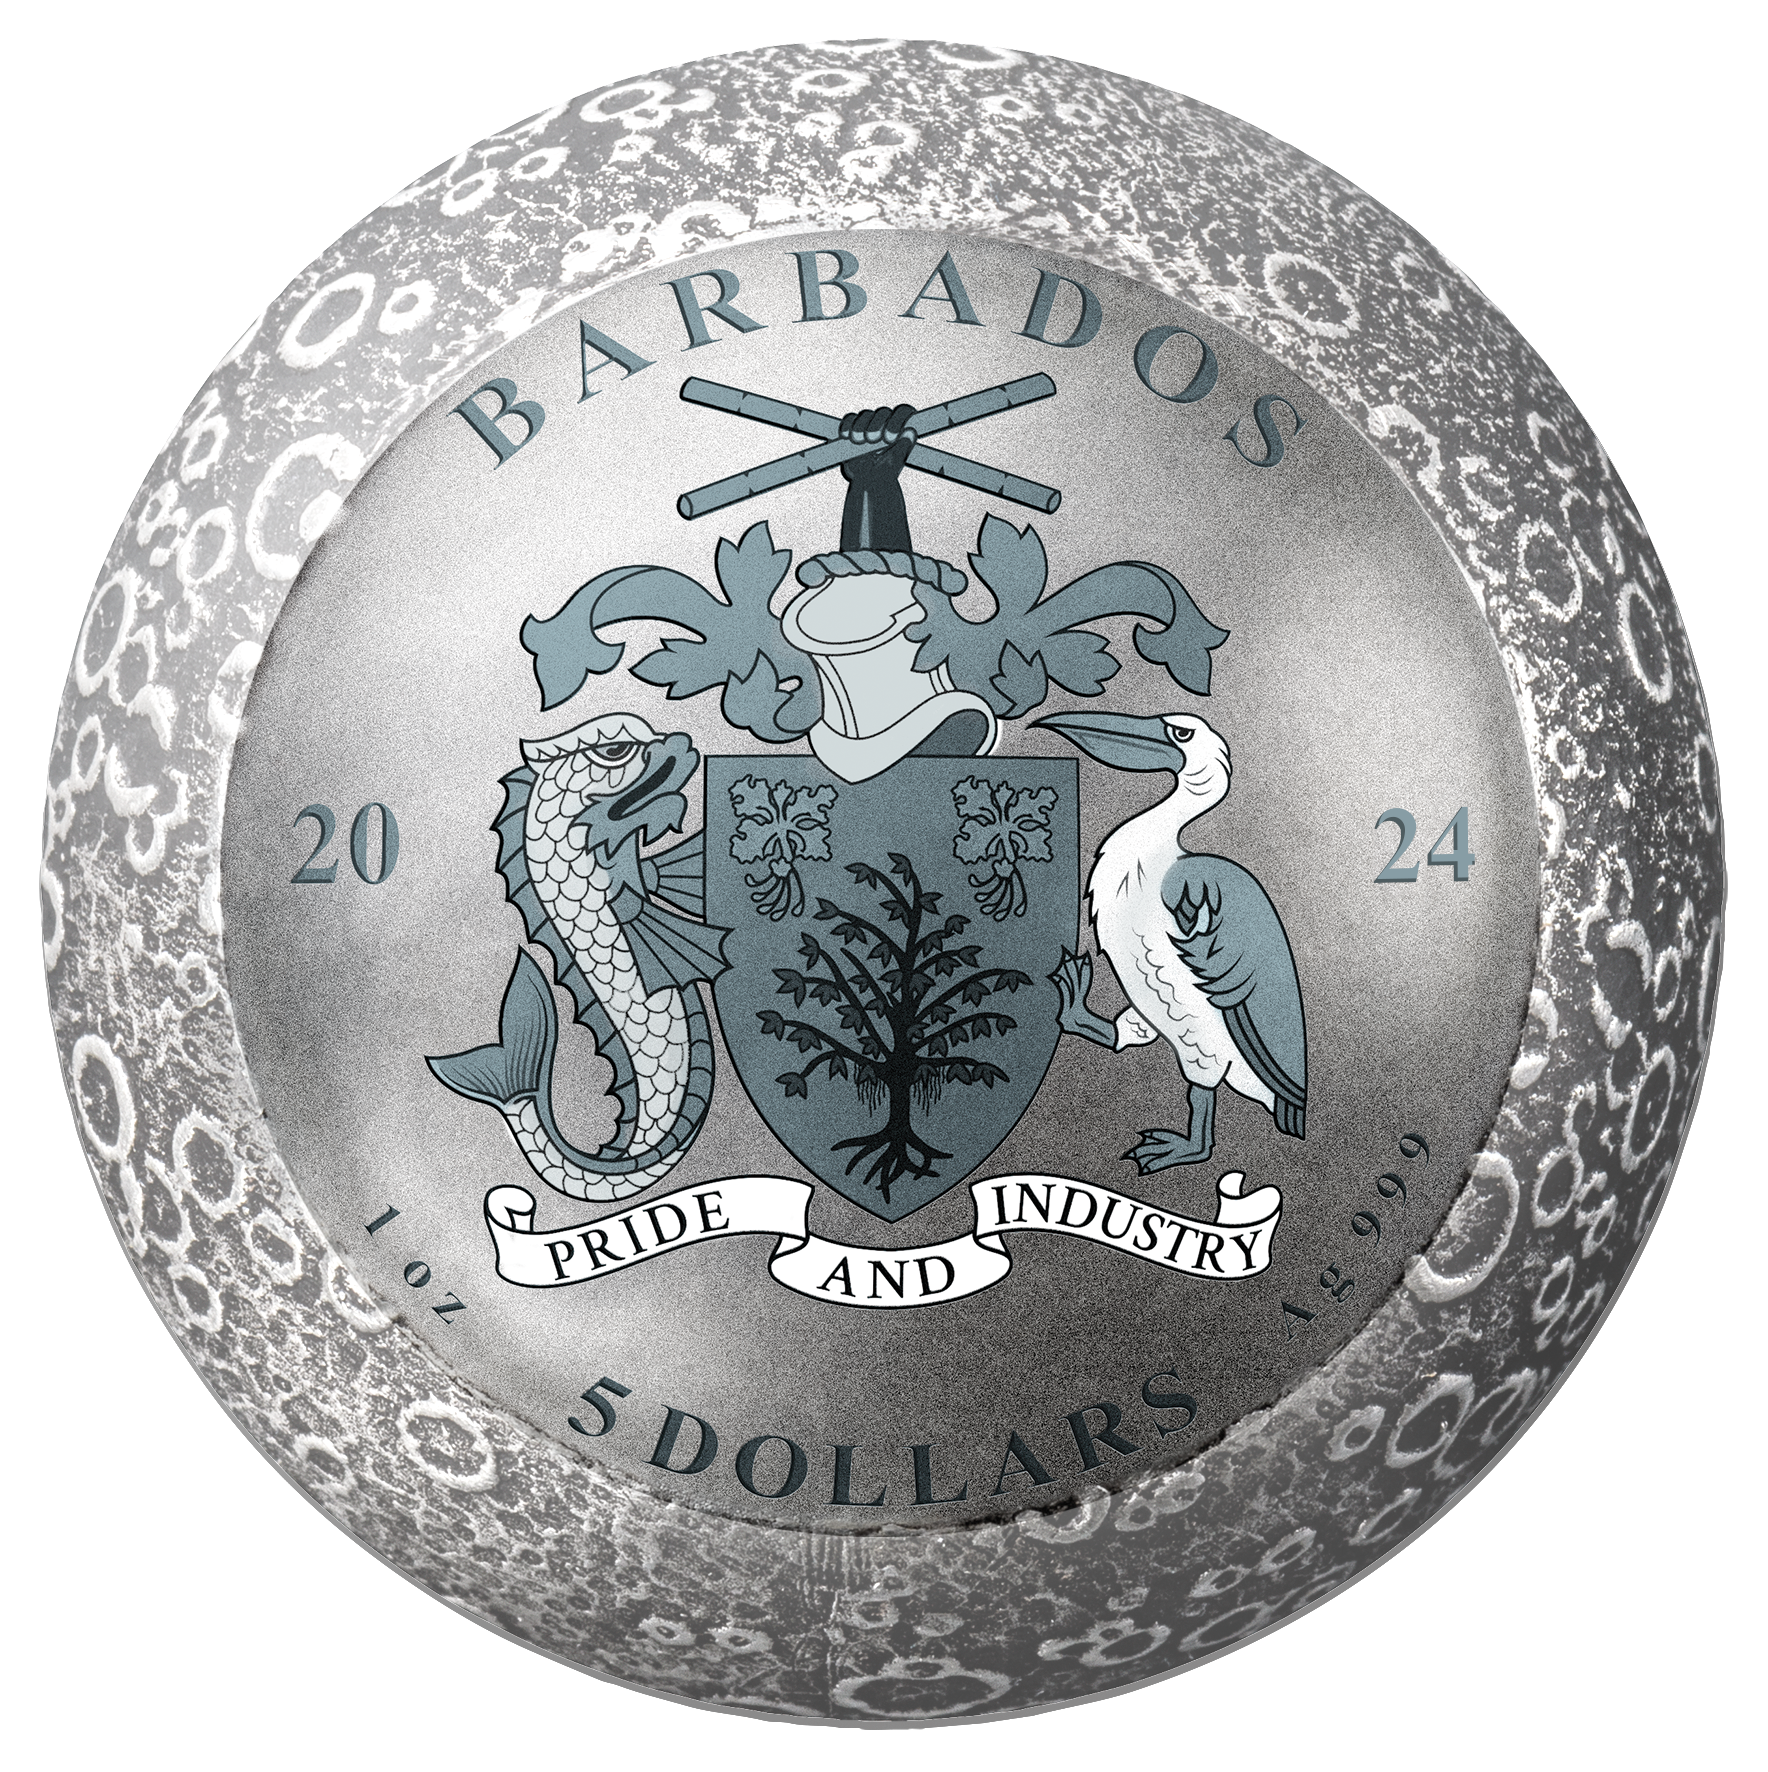 MOON LANDING Apollo 11 55th Anniversary 1 Oz Silver Coin $5 Barbados 2024